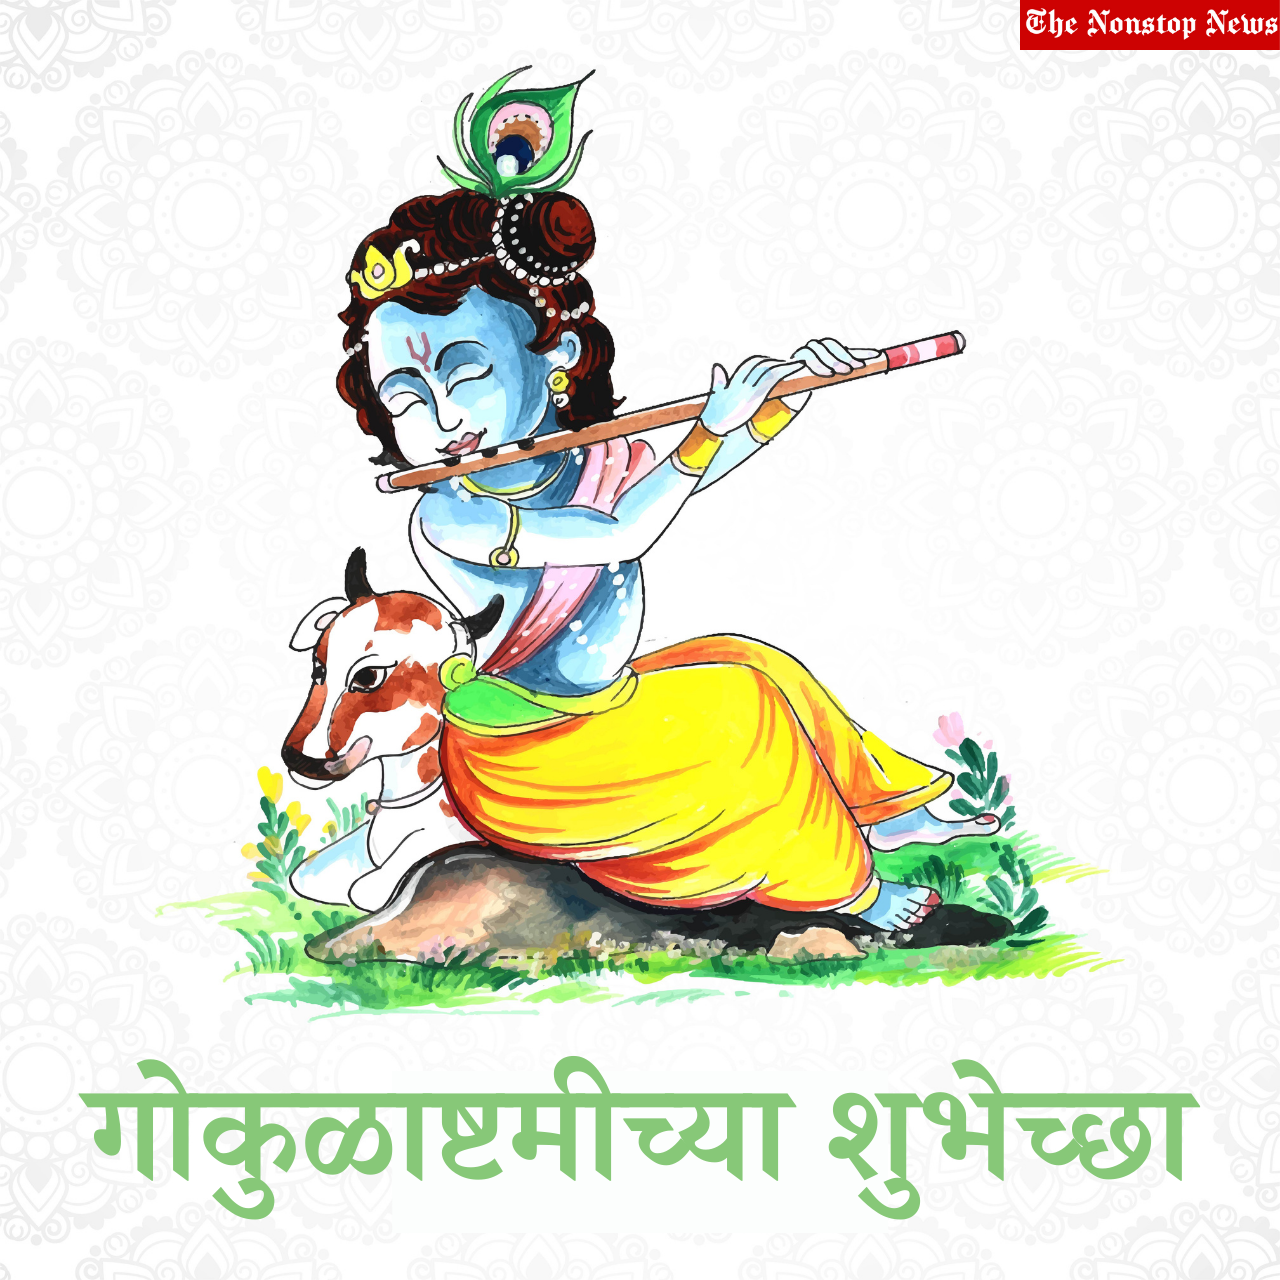 Krishna Janmashtami 2021: Happy Gokulashtami Marathi Wishes, HD Images, Shayari, Messages, Greetings, Quotes, and Status